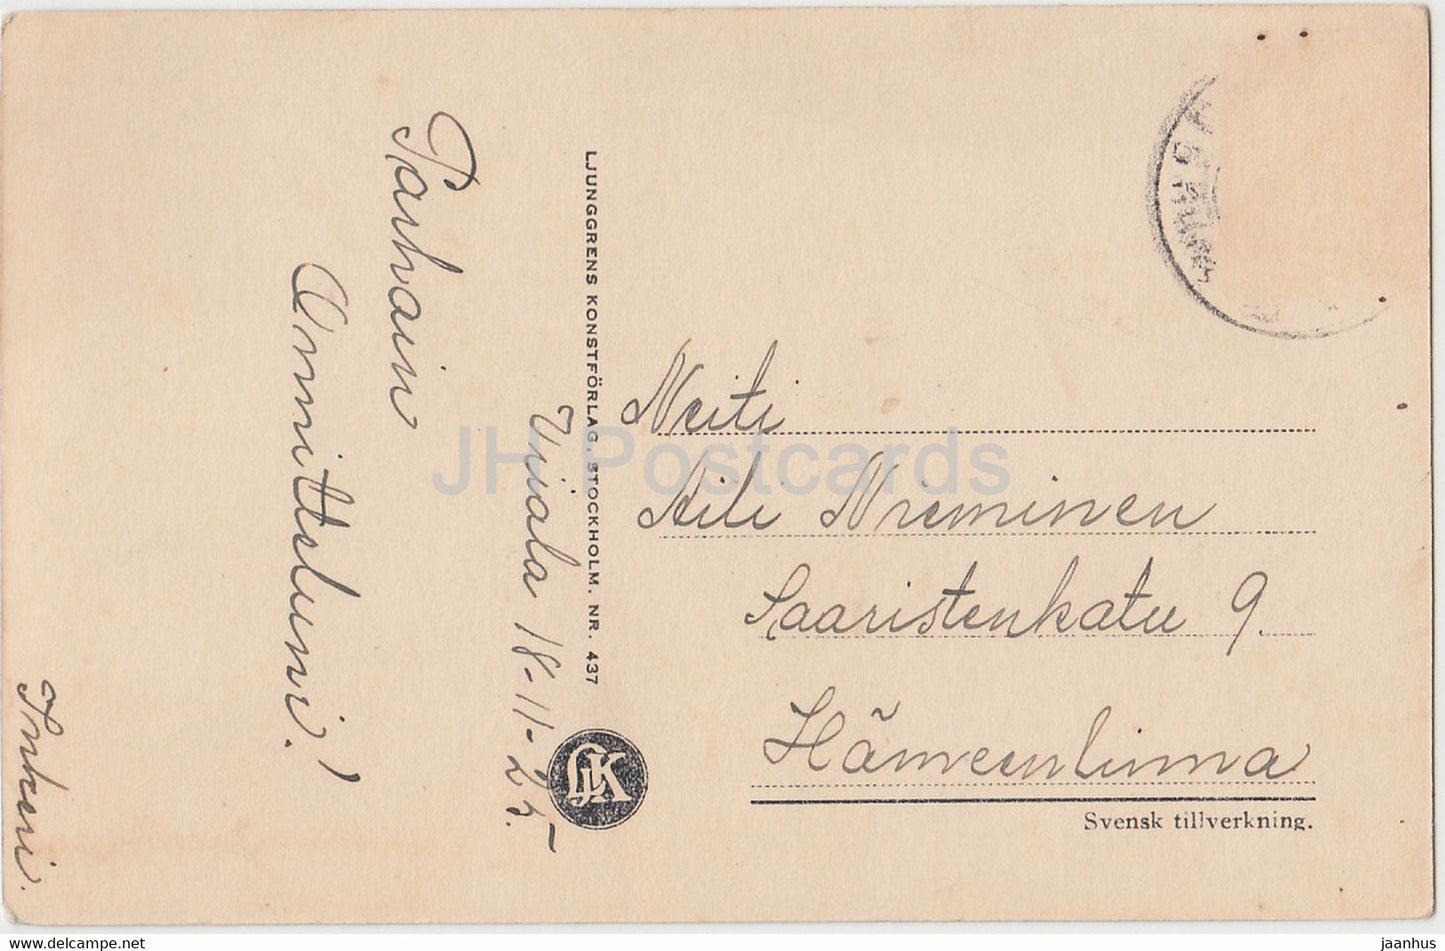 Amerikanischer Schauspieler Conway Tearle - Film - Film - 437 - 1925 - Schweden - alte Postkarte - gebraucht